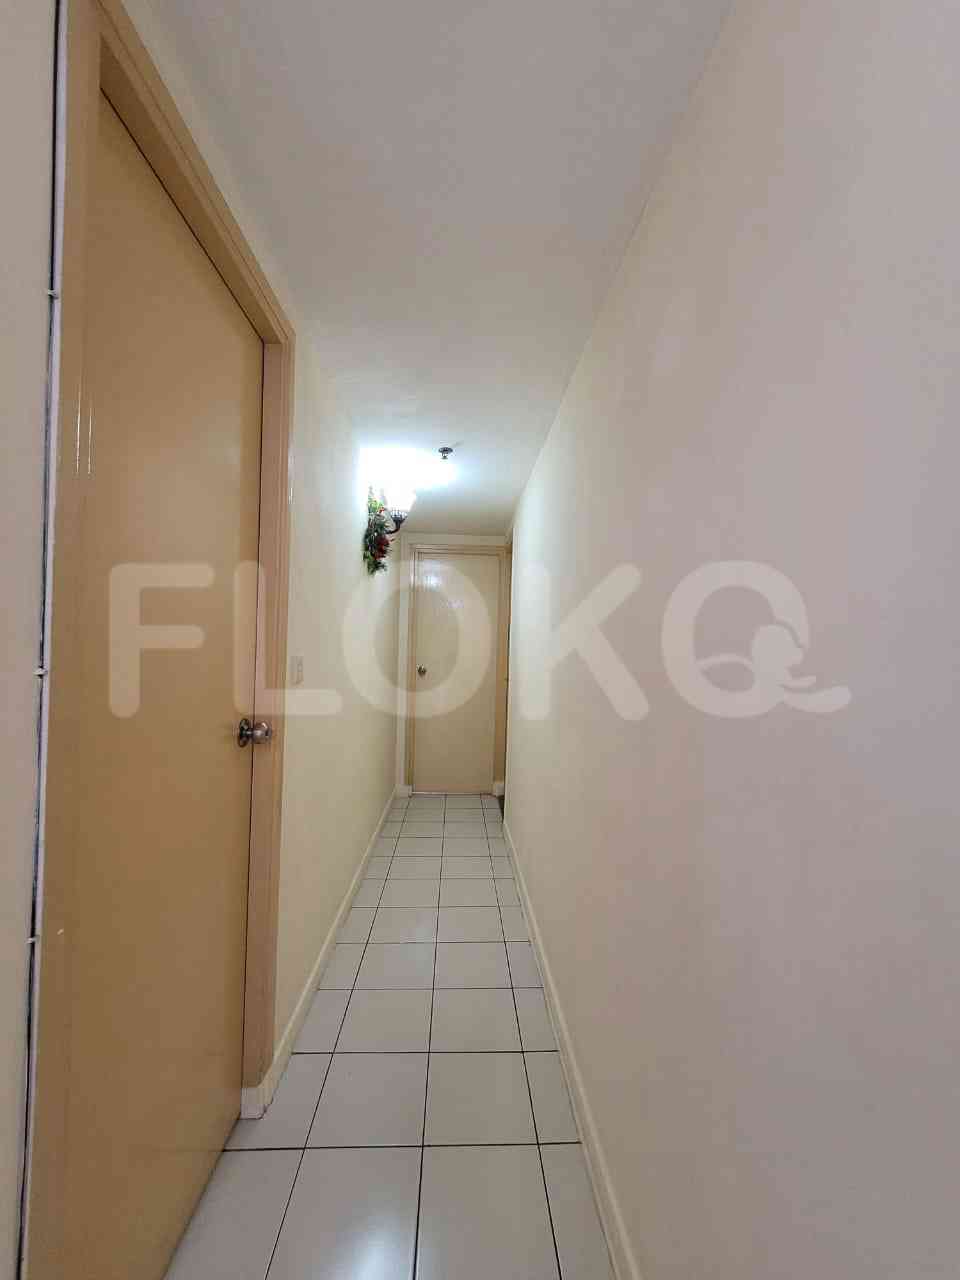 2 Bedroom on 23rd Floor for Rent in Taman Rasuna Apartment - fku9de 4